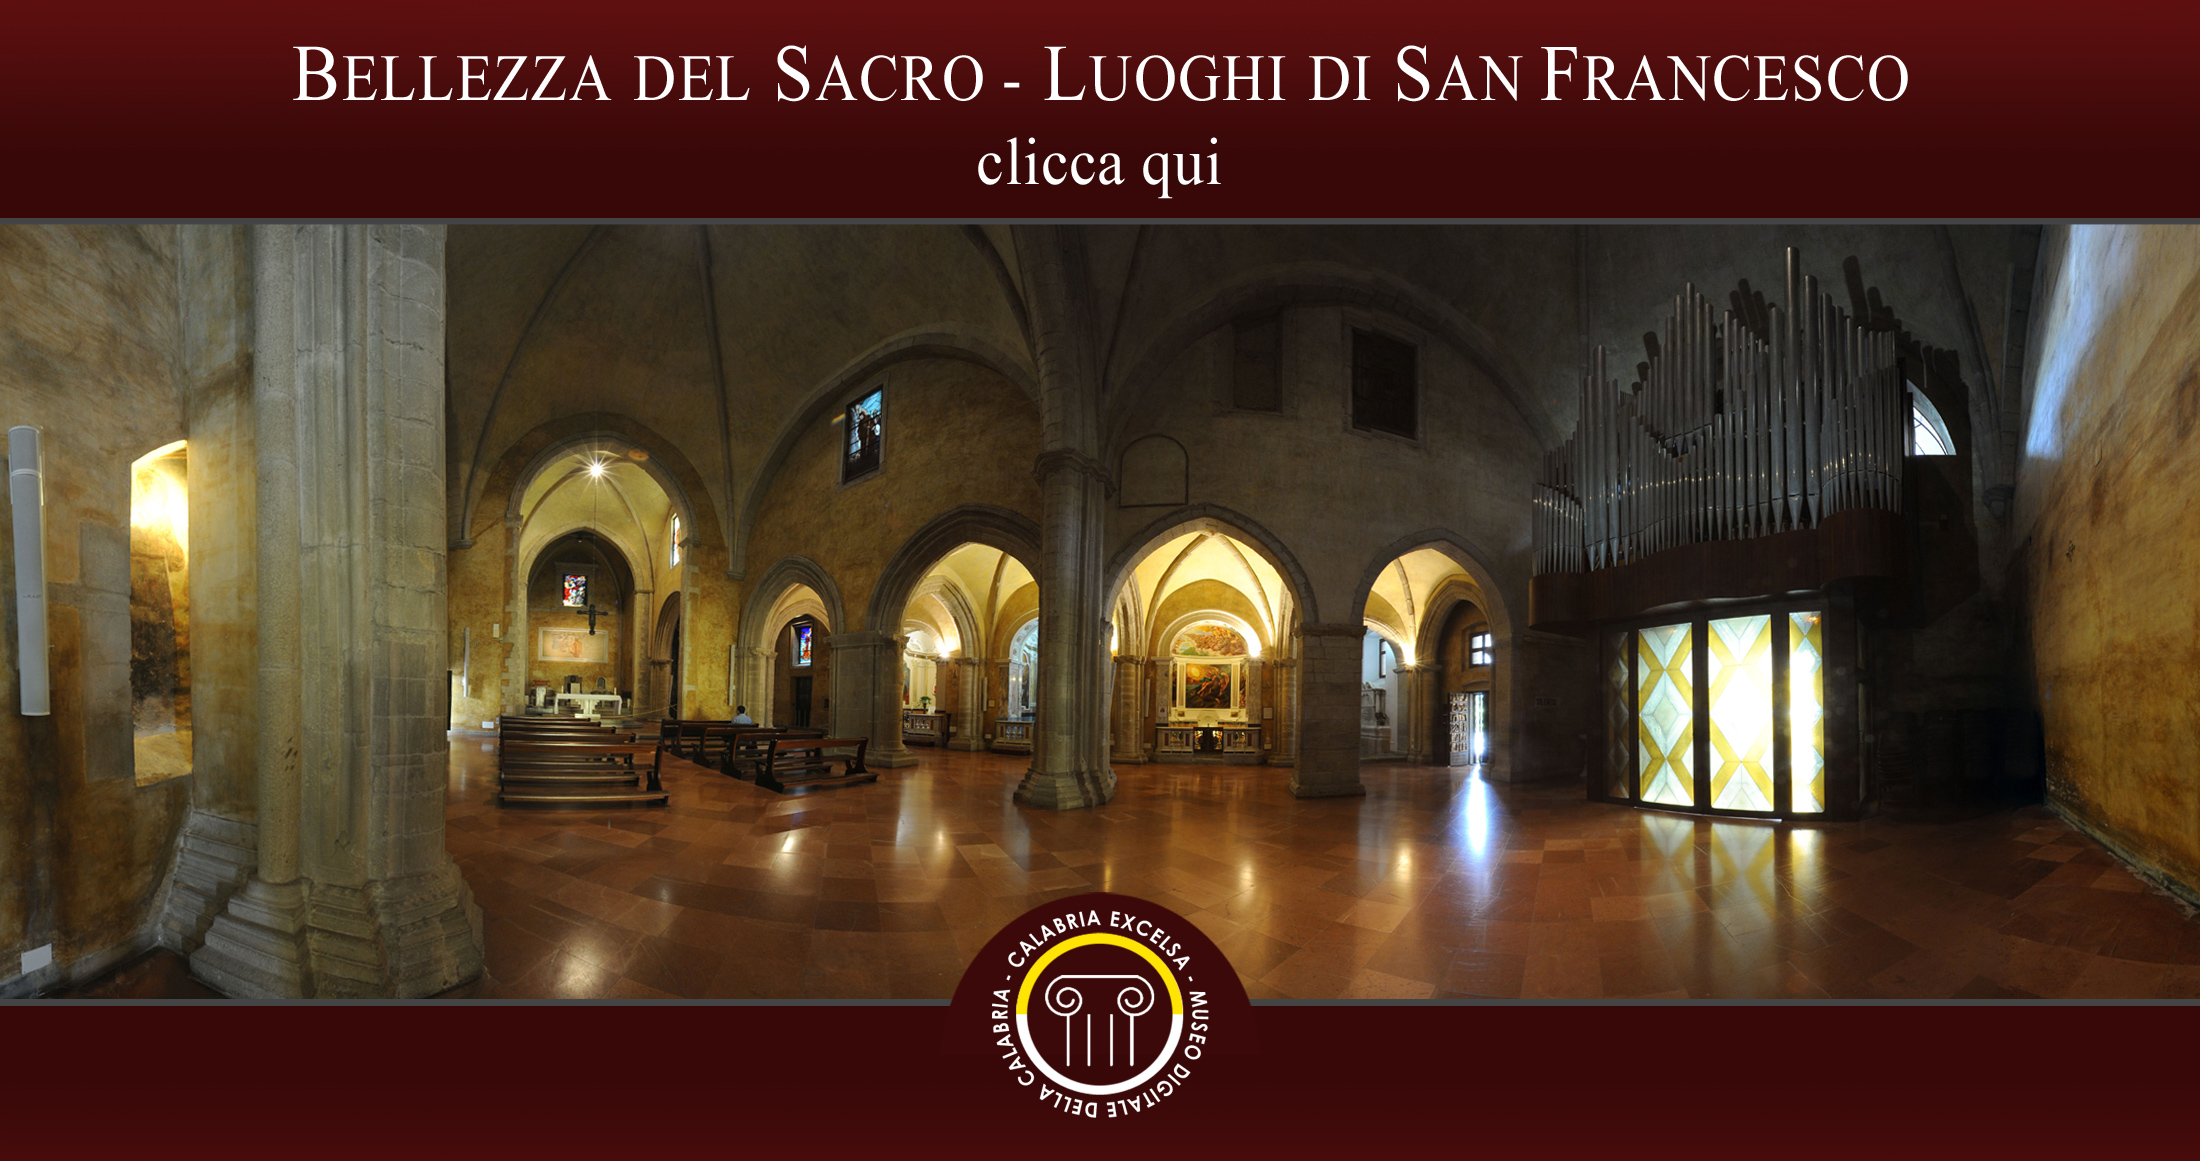 Museo Digitale della Calabria - CALABRIAEXCELSA - Esposizione Siti Naturali e Culturali Bellezza del Sacro Luoghi di San Francesco